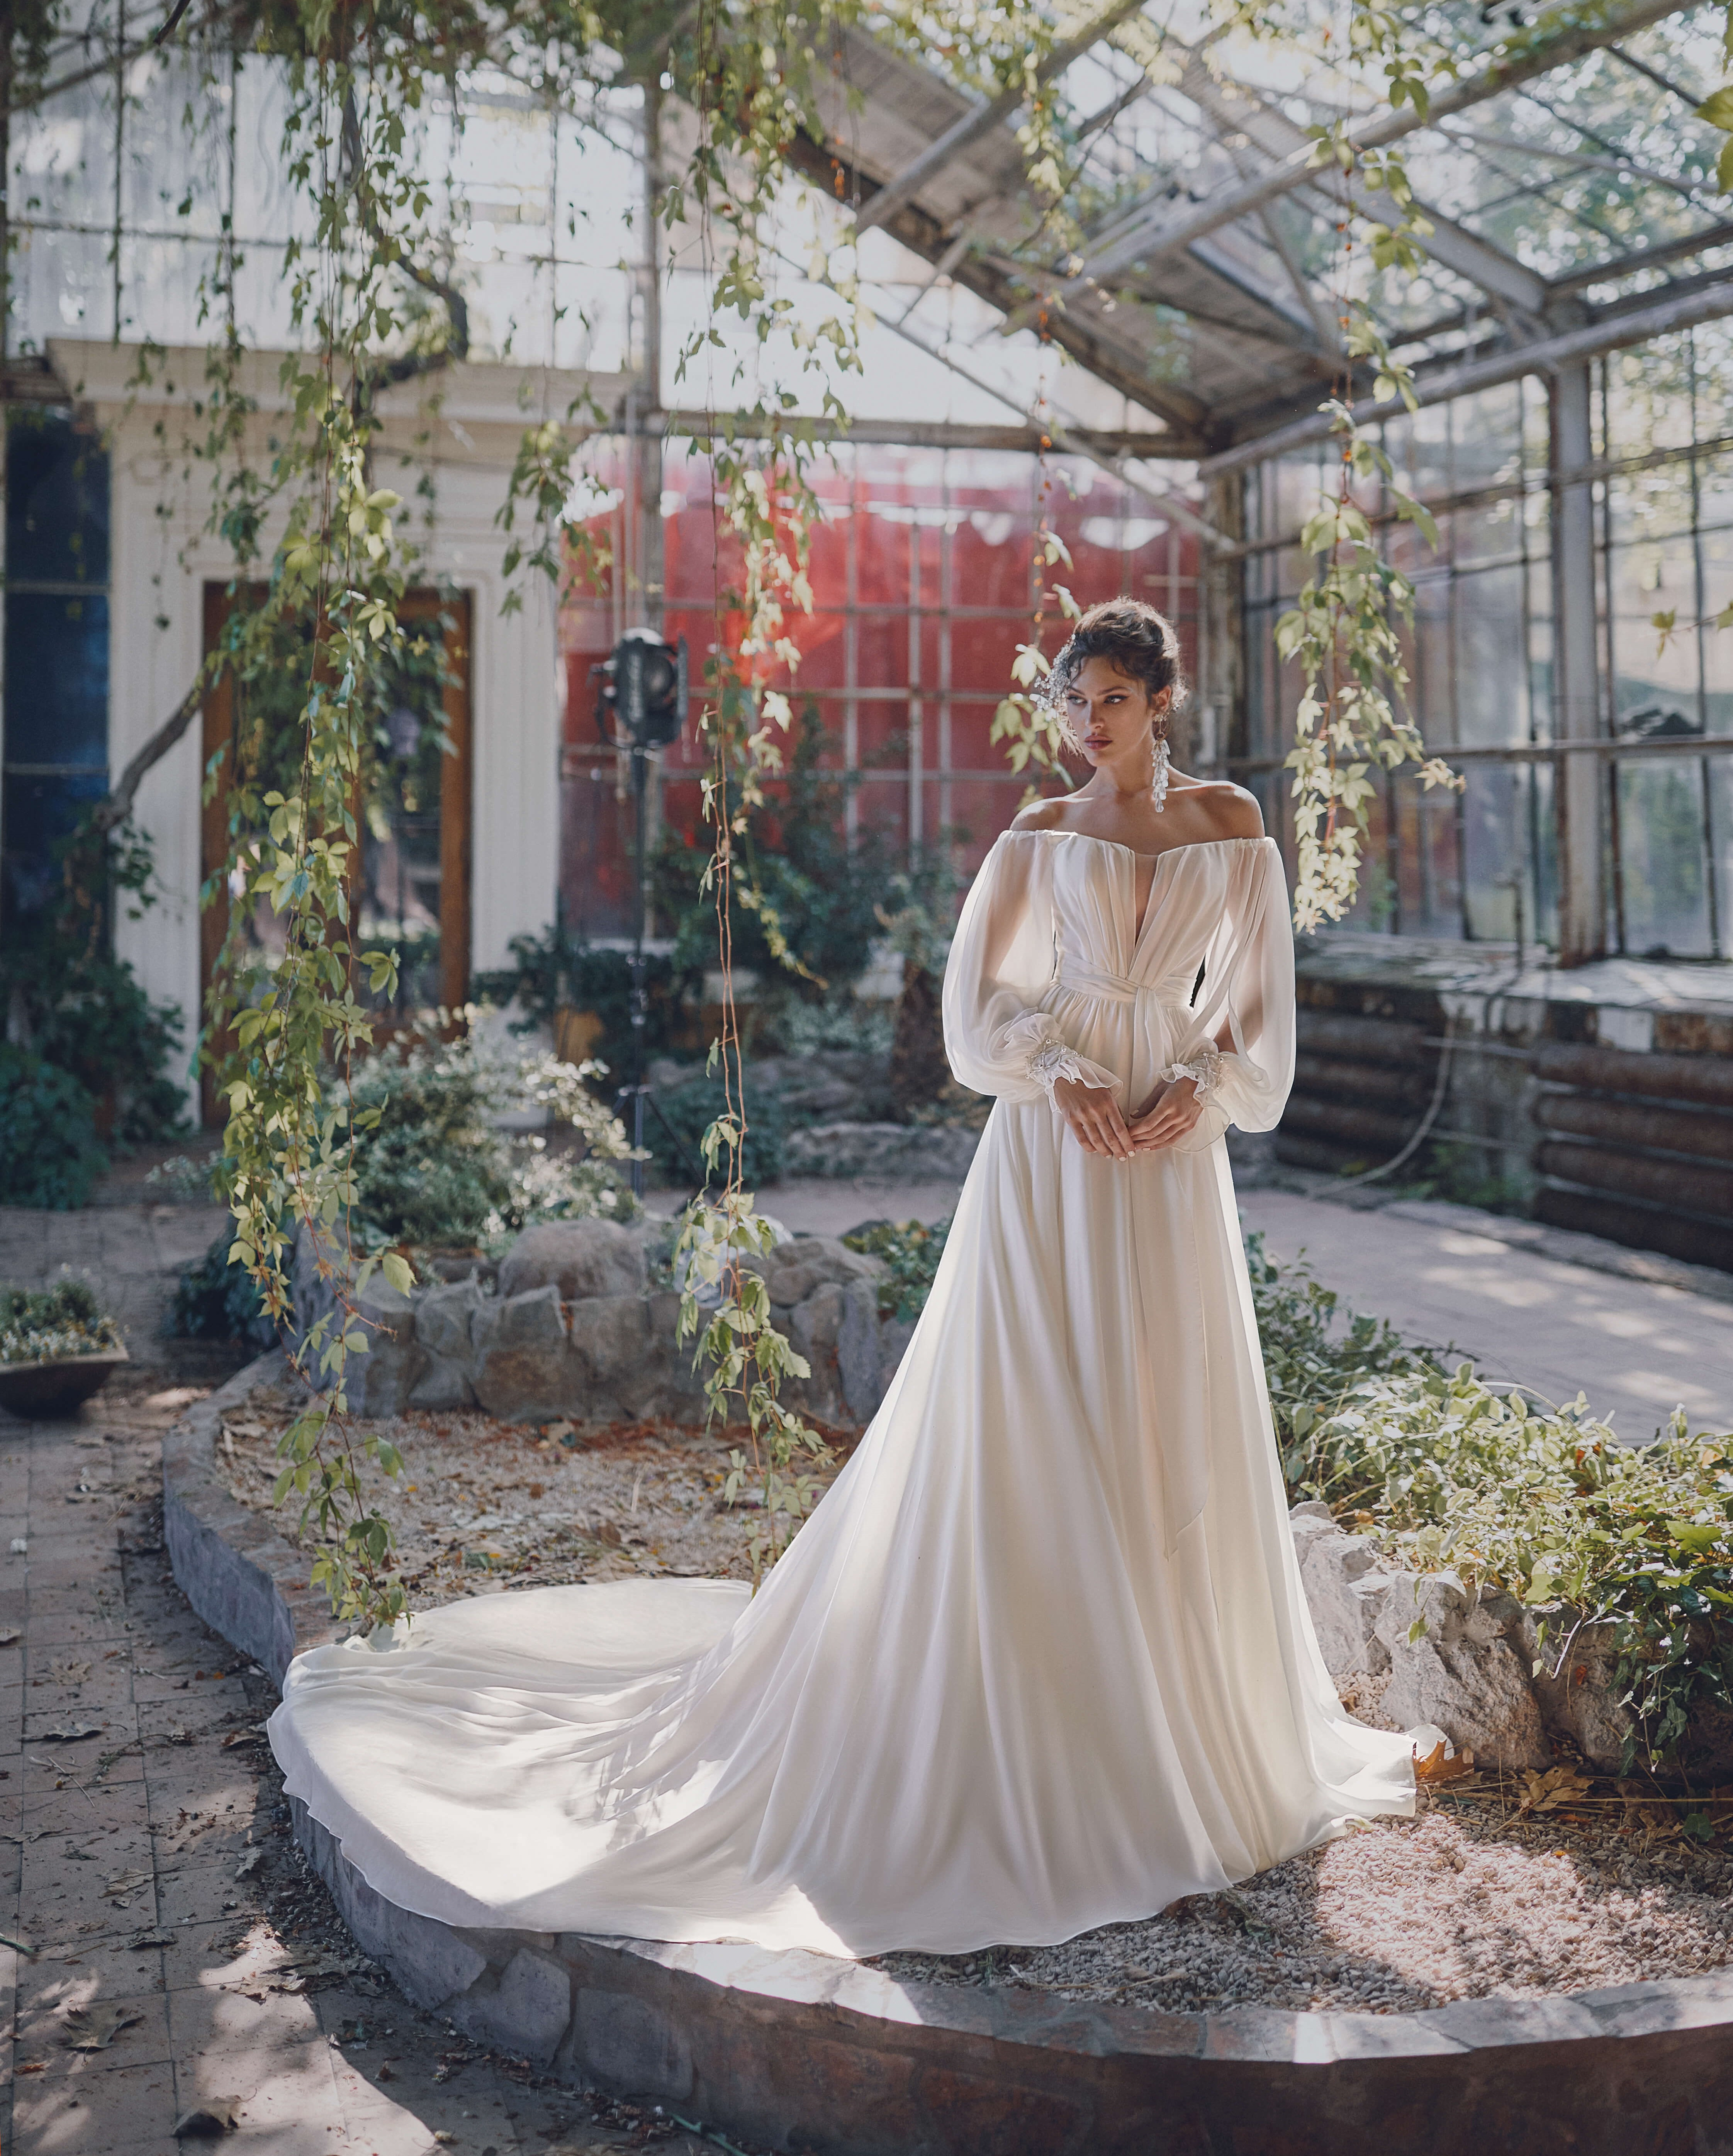 Купить свадебное платье «Дарина» Анже Этуаль из коллекции Леди Перл 2021 года в салоне «Мэри Трюфель»